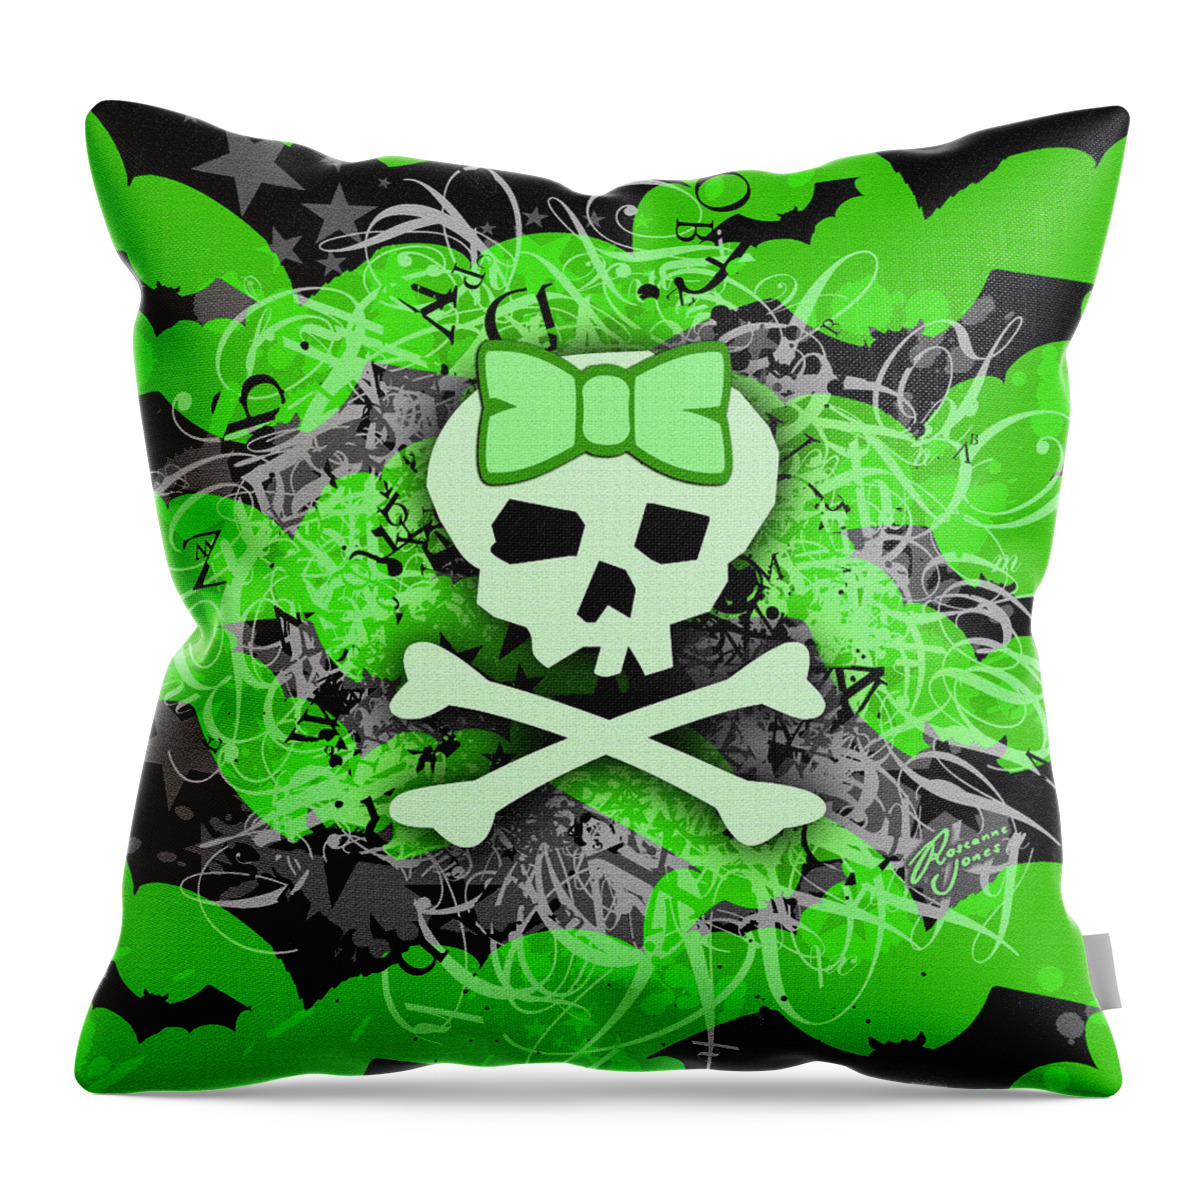 Green Throw Pillow featuring the digital art Green Girly Bat Skull by Roseanne Jones